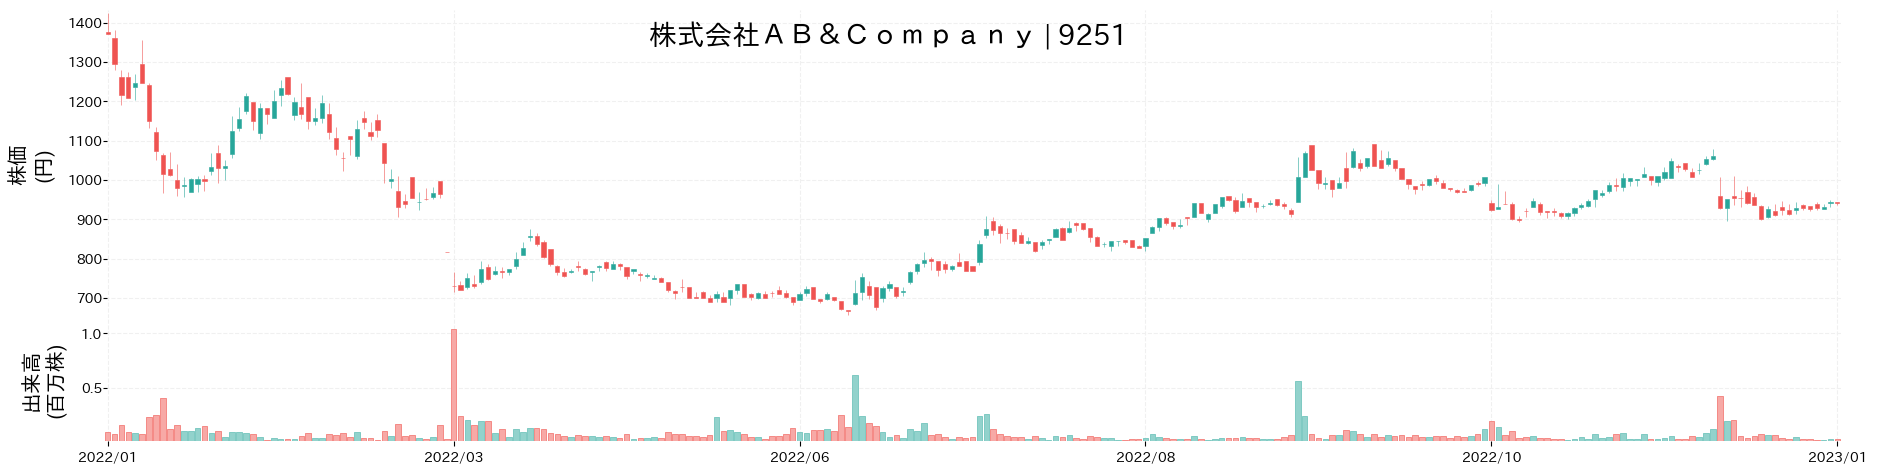 AB&Companyの株価推移(2022)